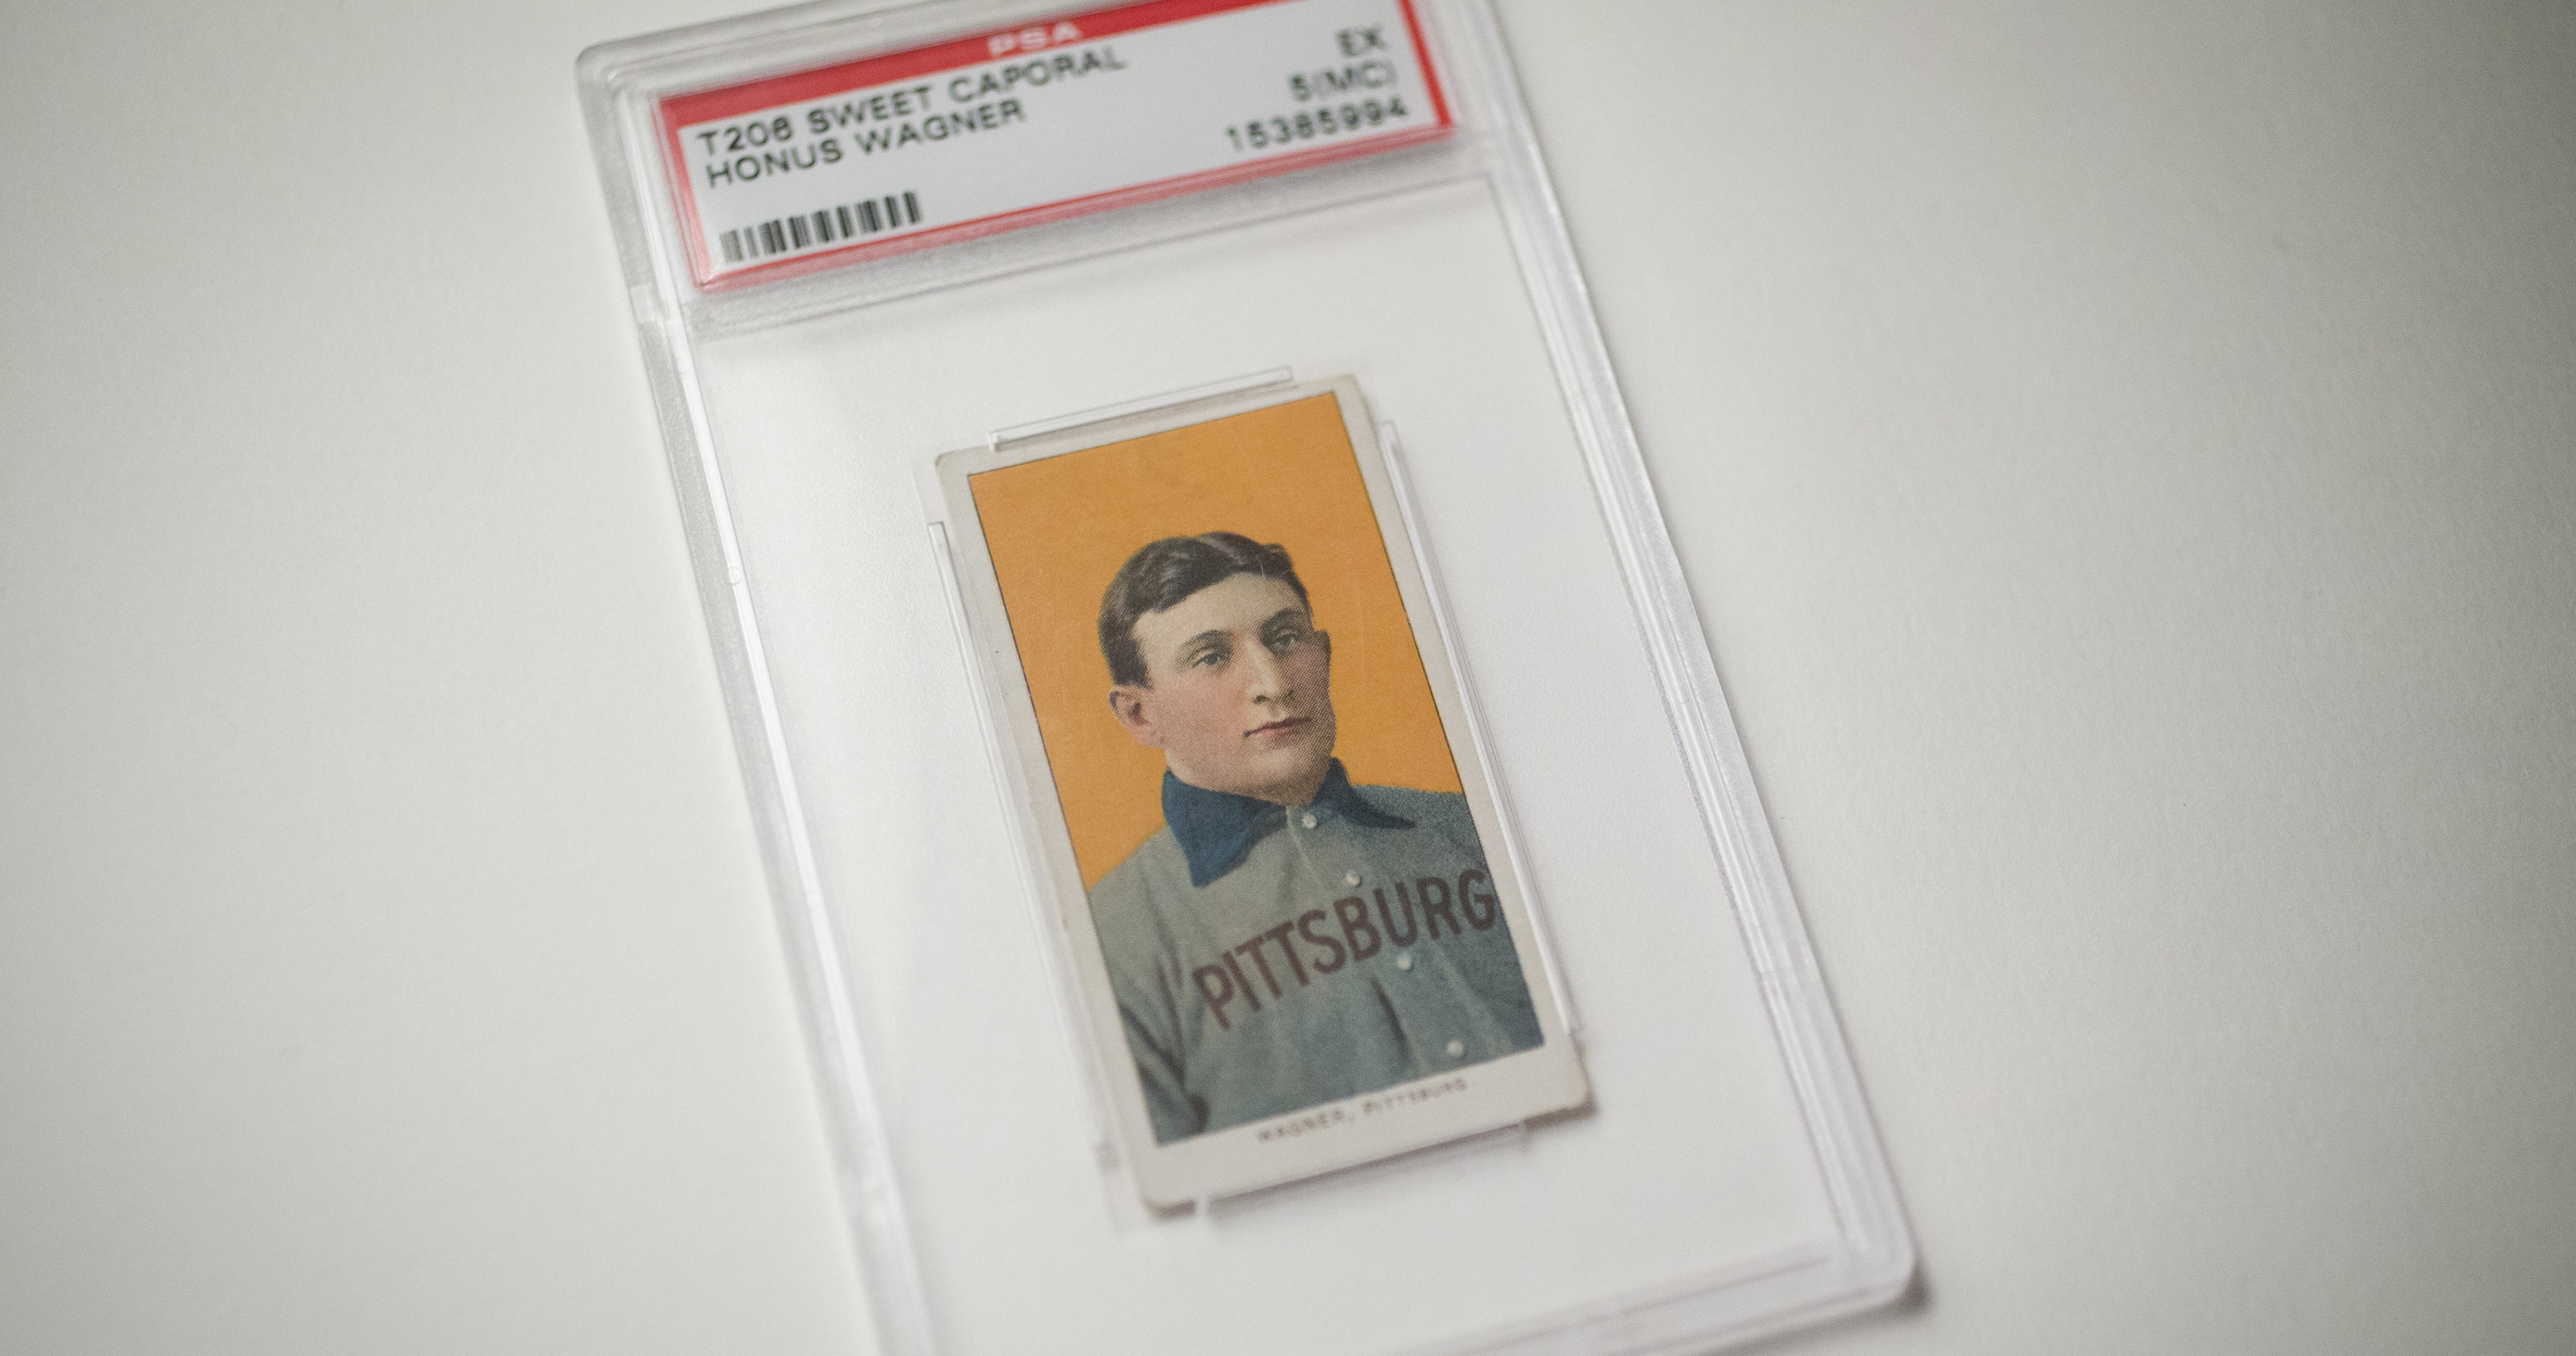 Torn T206 Honus Wagner baseball card sells for $475K at auction